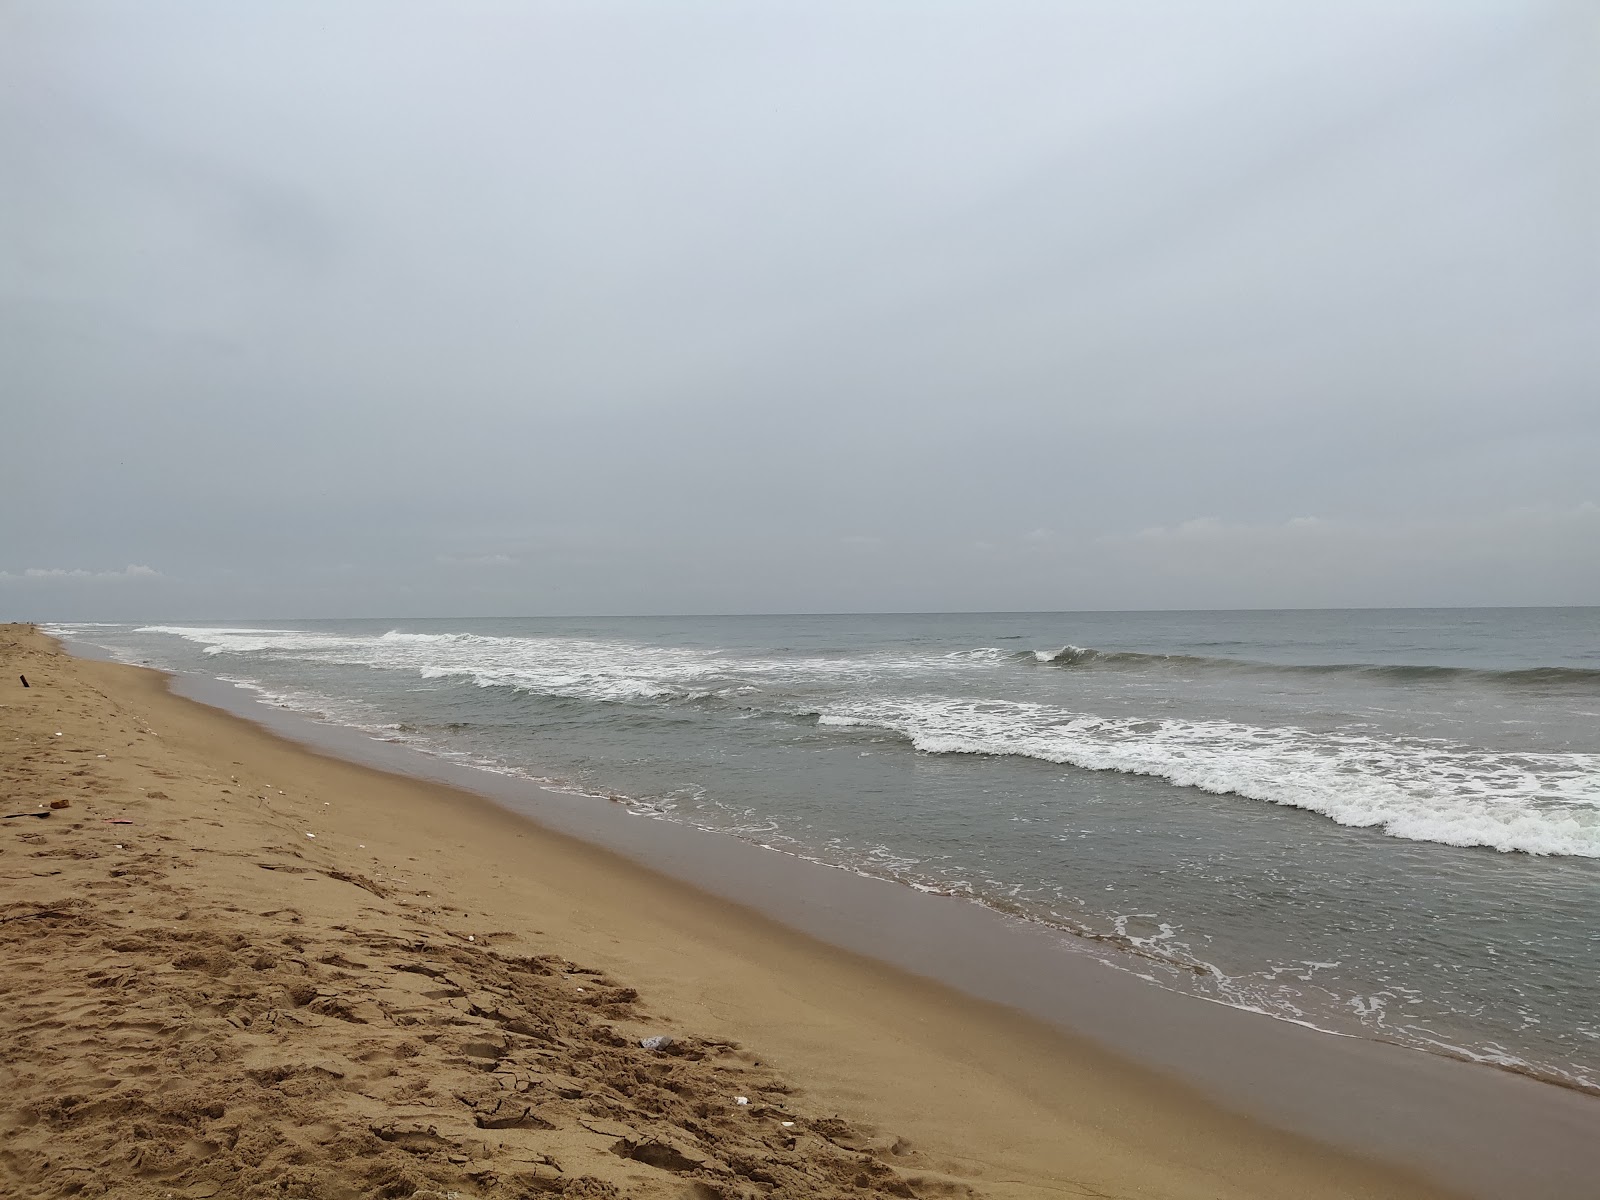 Gangapatnam Beach'in fotoğrafı parlak kum yüzey ile